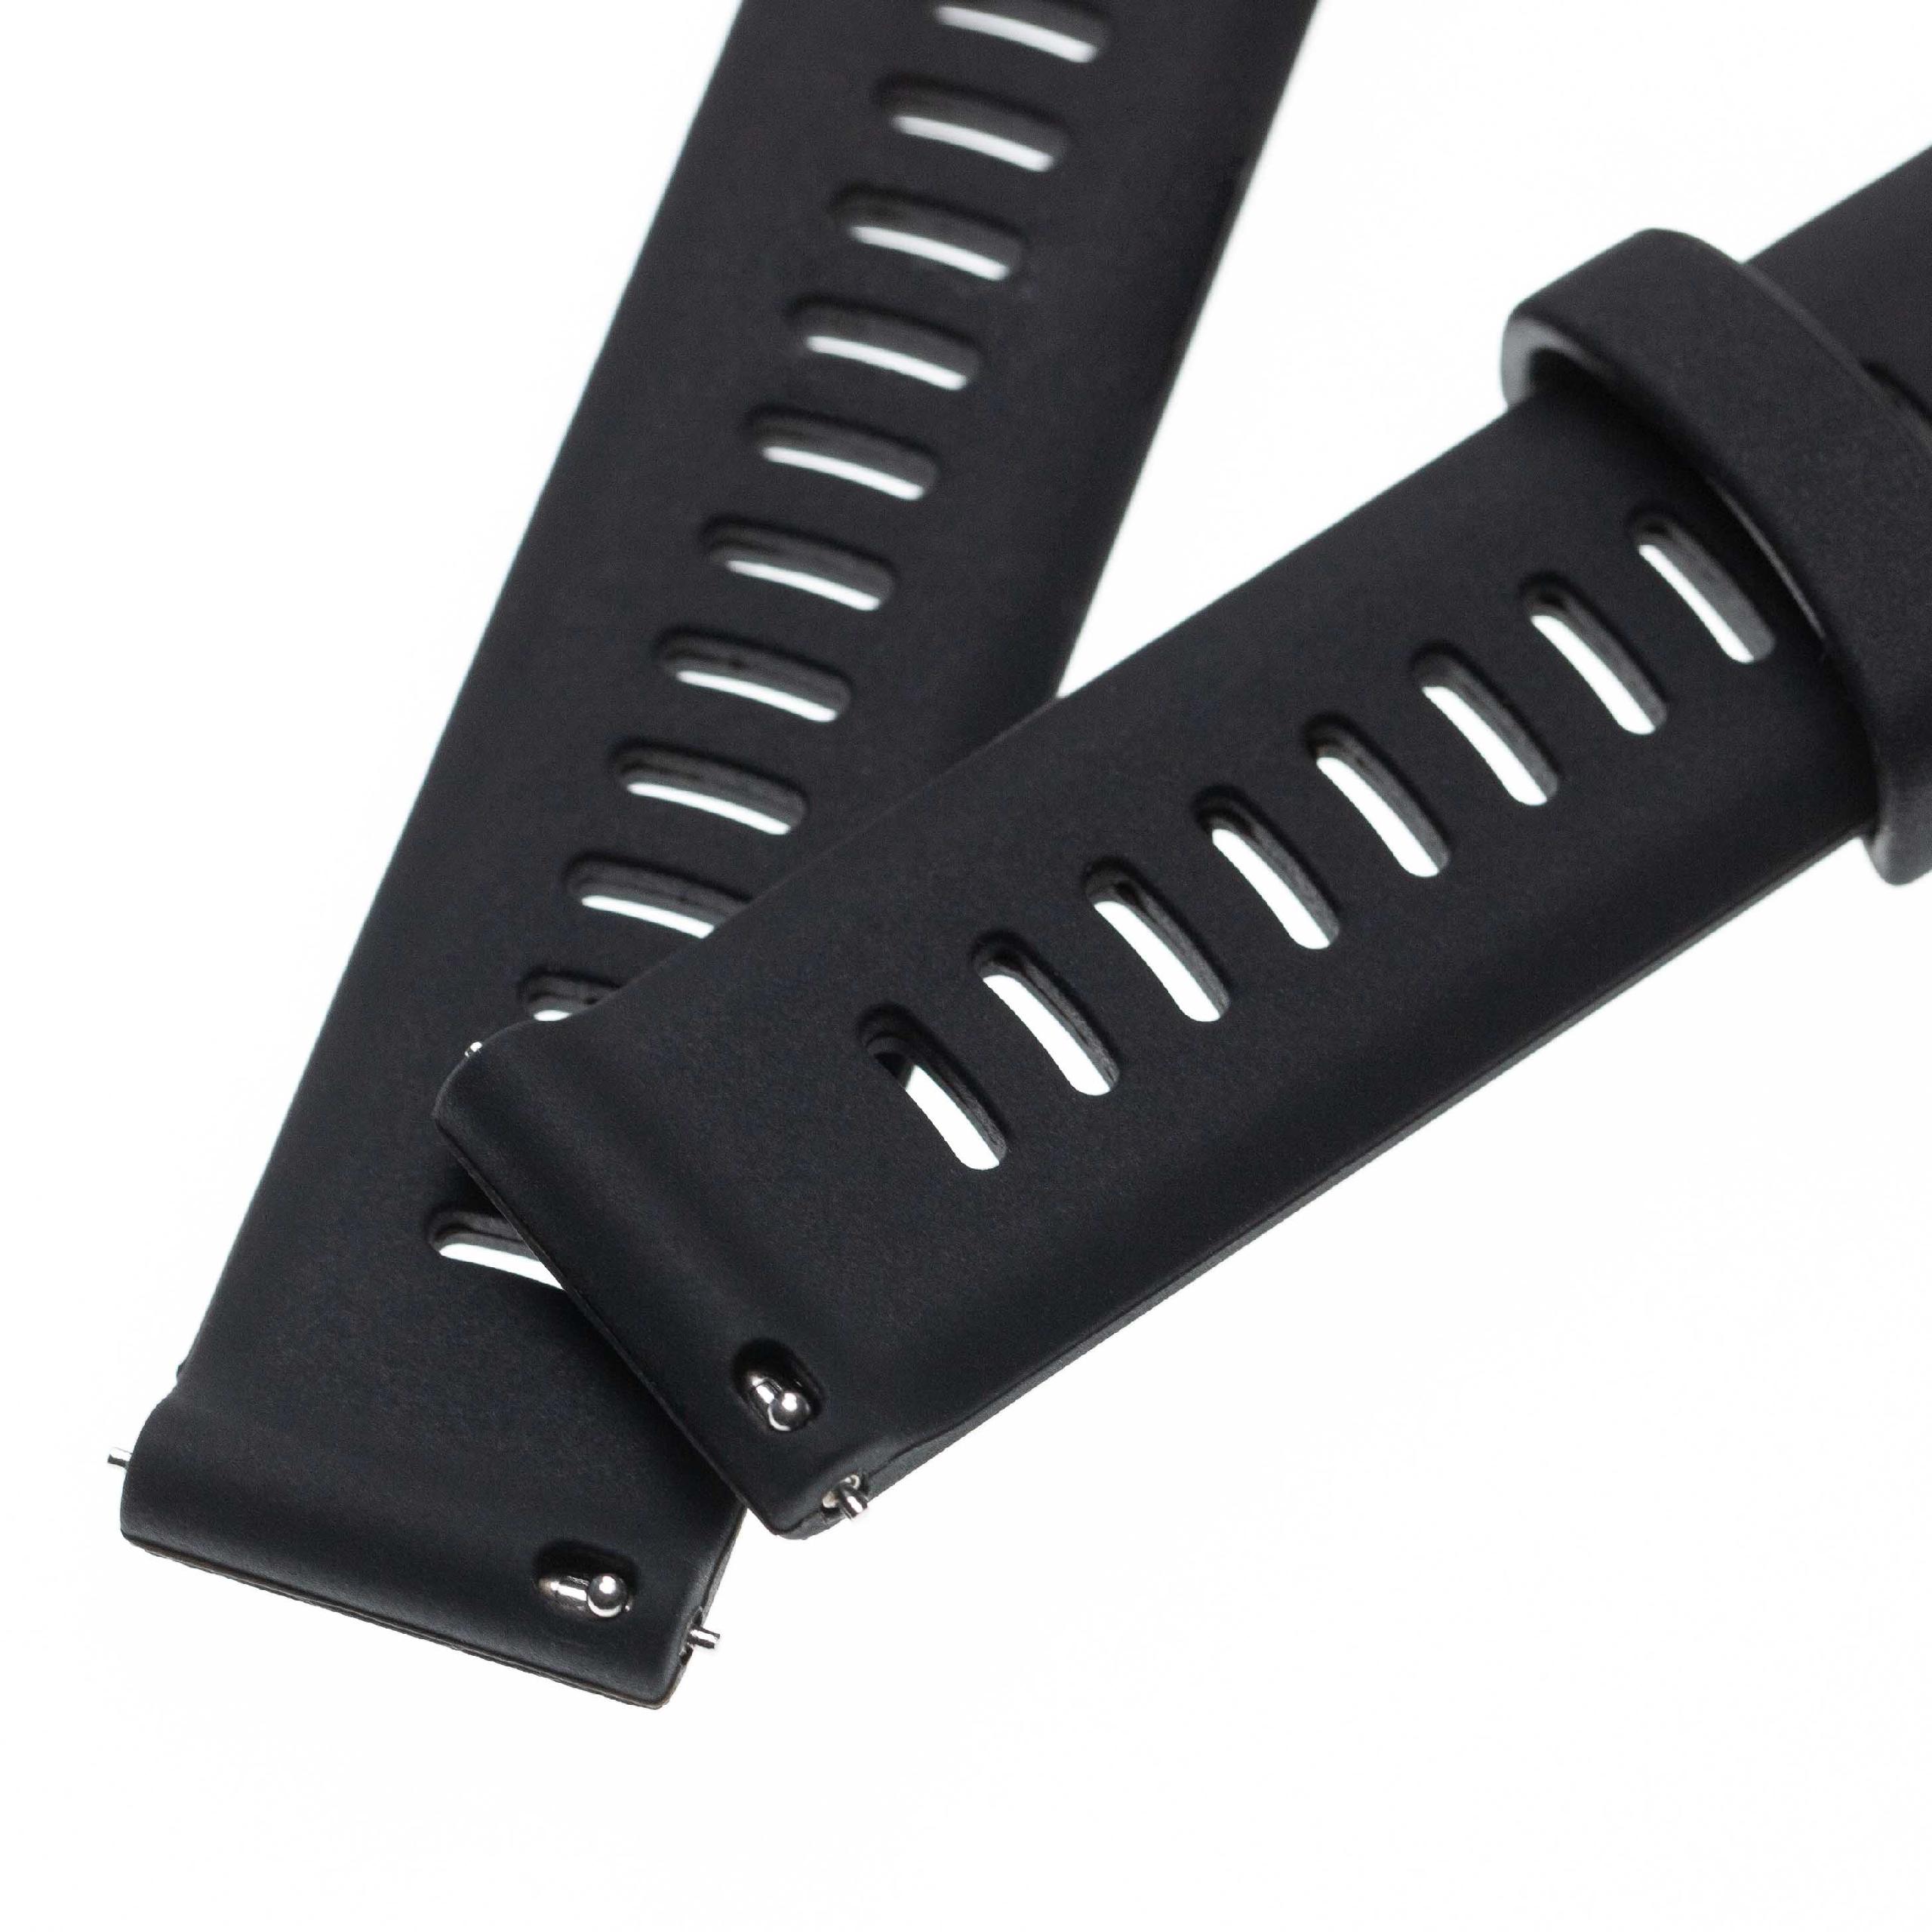 Armband für Garmin Forerunner Smartwatch - 11 + 8,5 cm lang, Silikon, schwarz